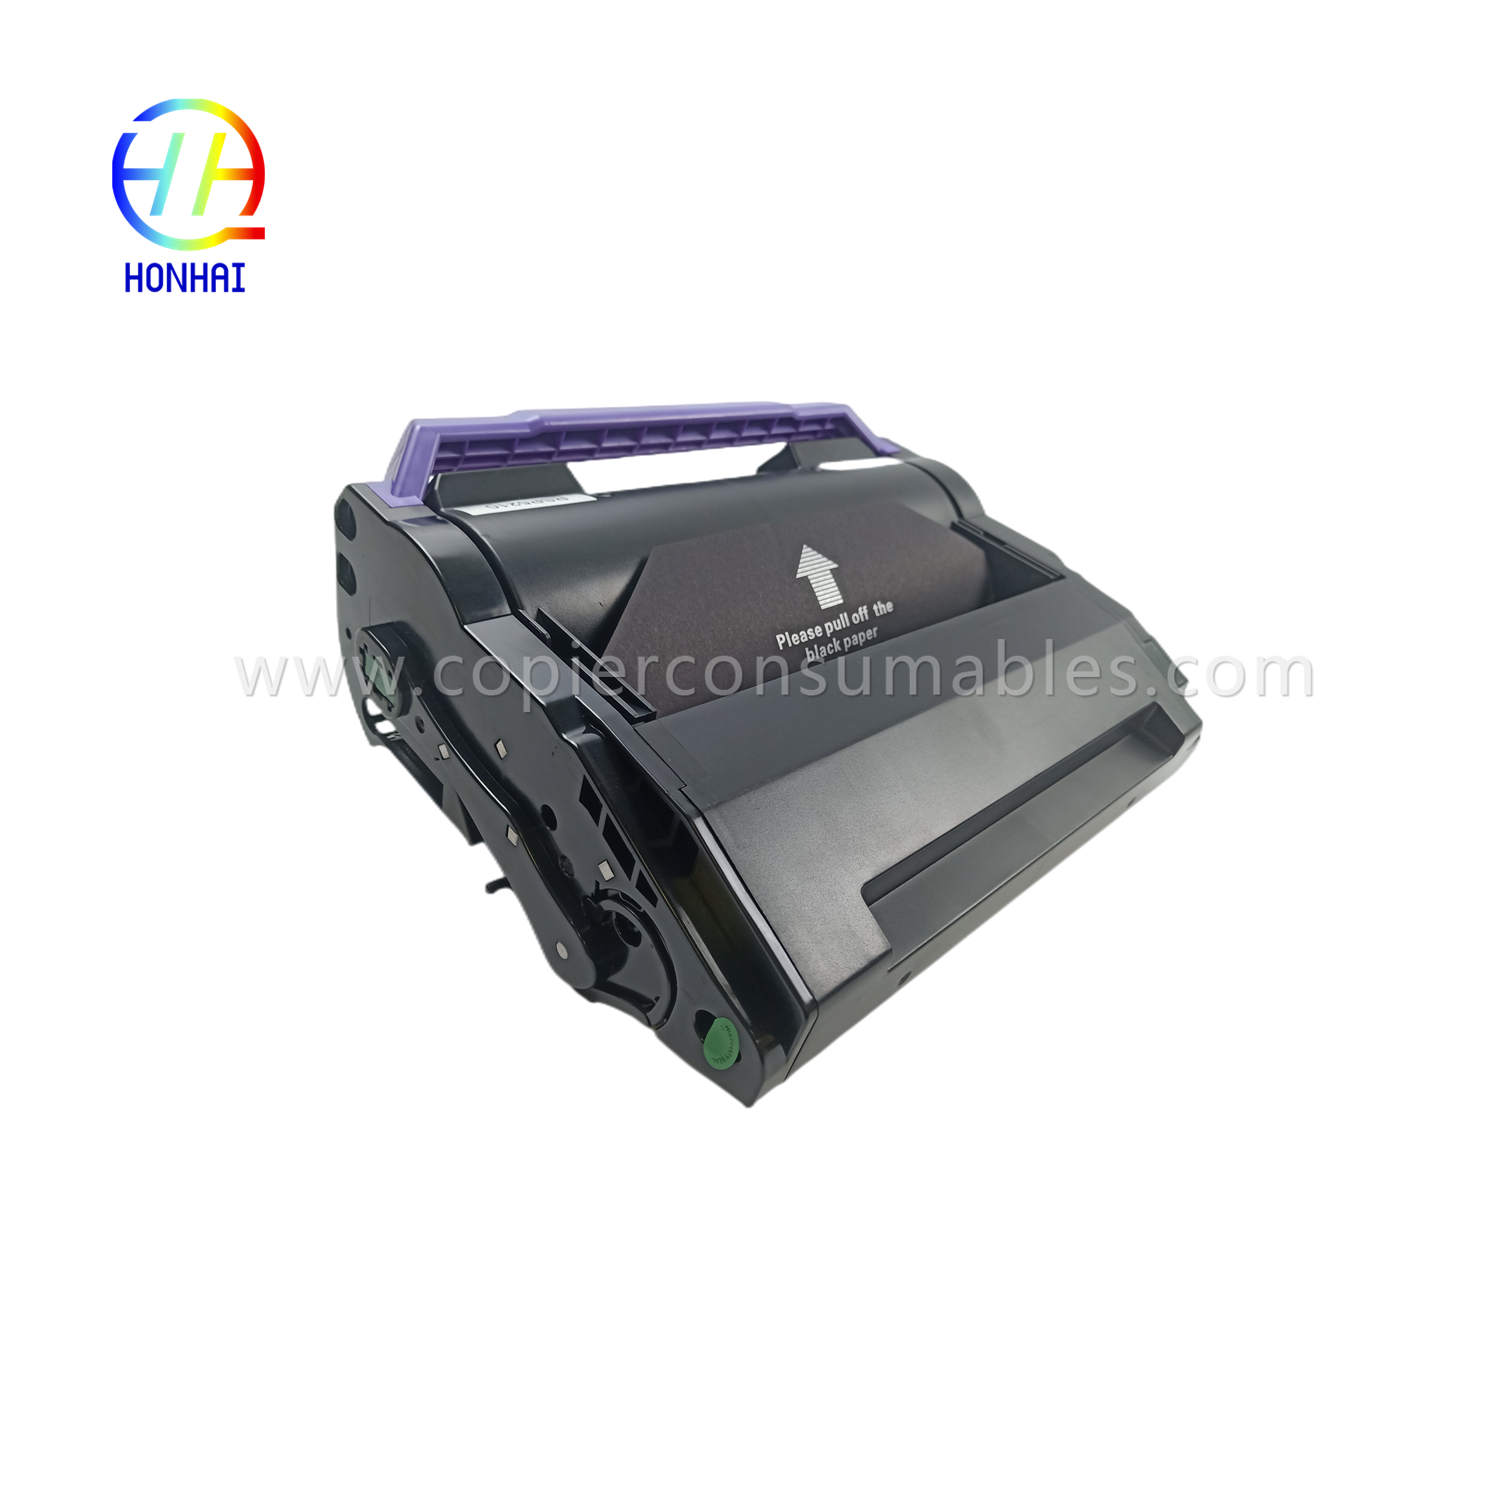 https://www.copierhonhaitech.com/toner-cartridge-zwart-voor-ricoh-406683-sp-5200-5210-product/